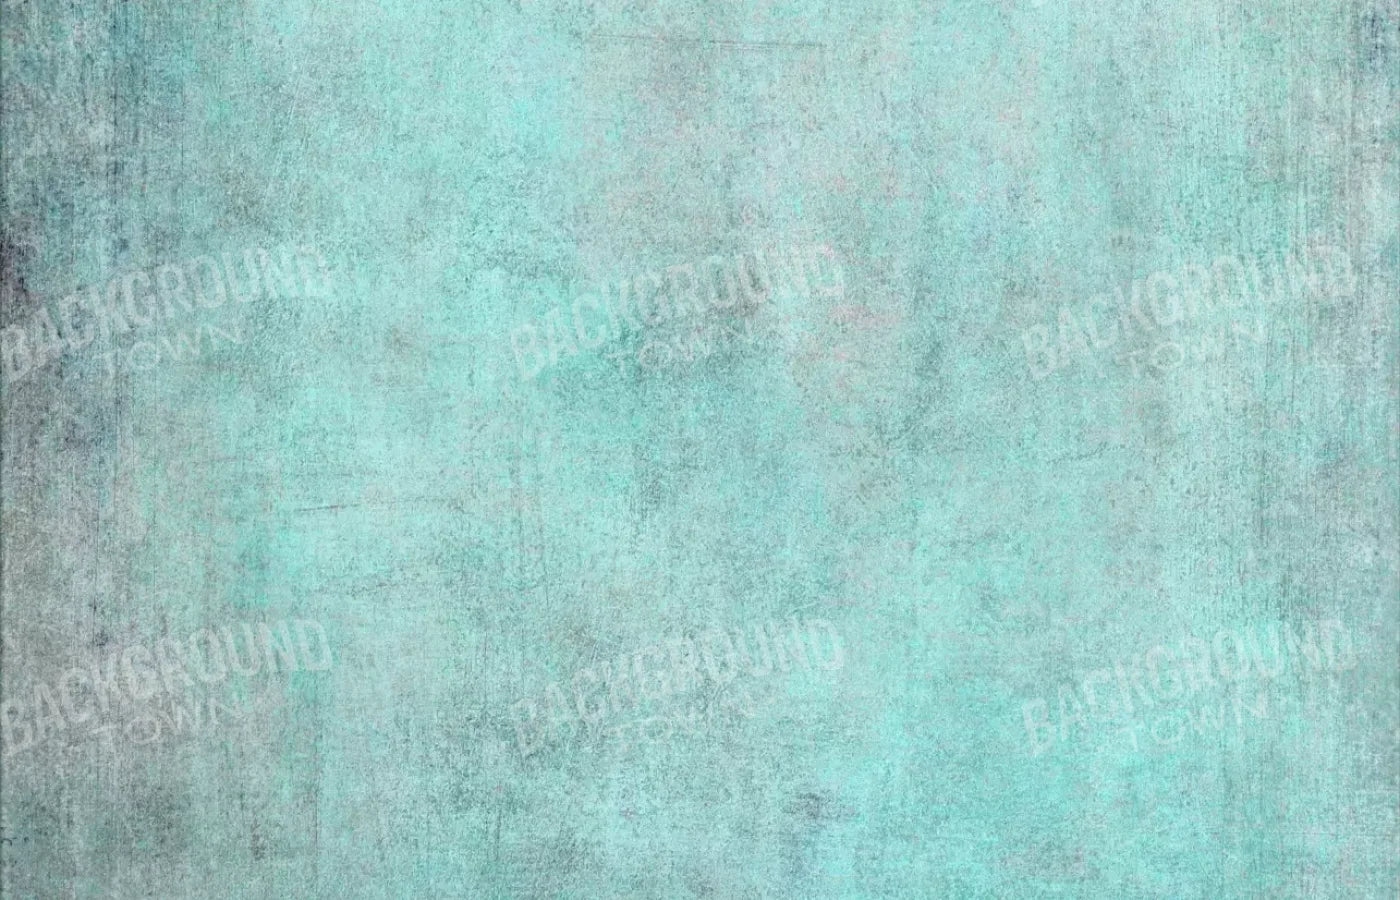 Grunge Seafoam 12X8 Ultracloth ( 144 X 96 Inch ) Backdrop